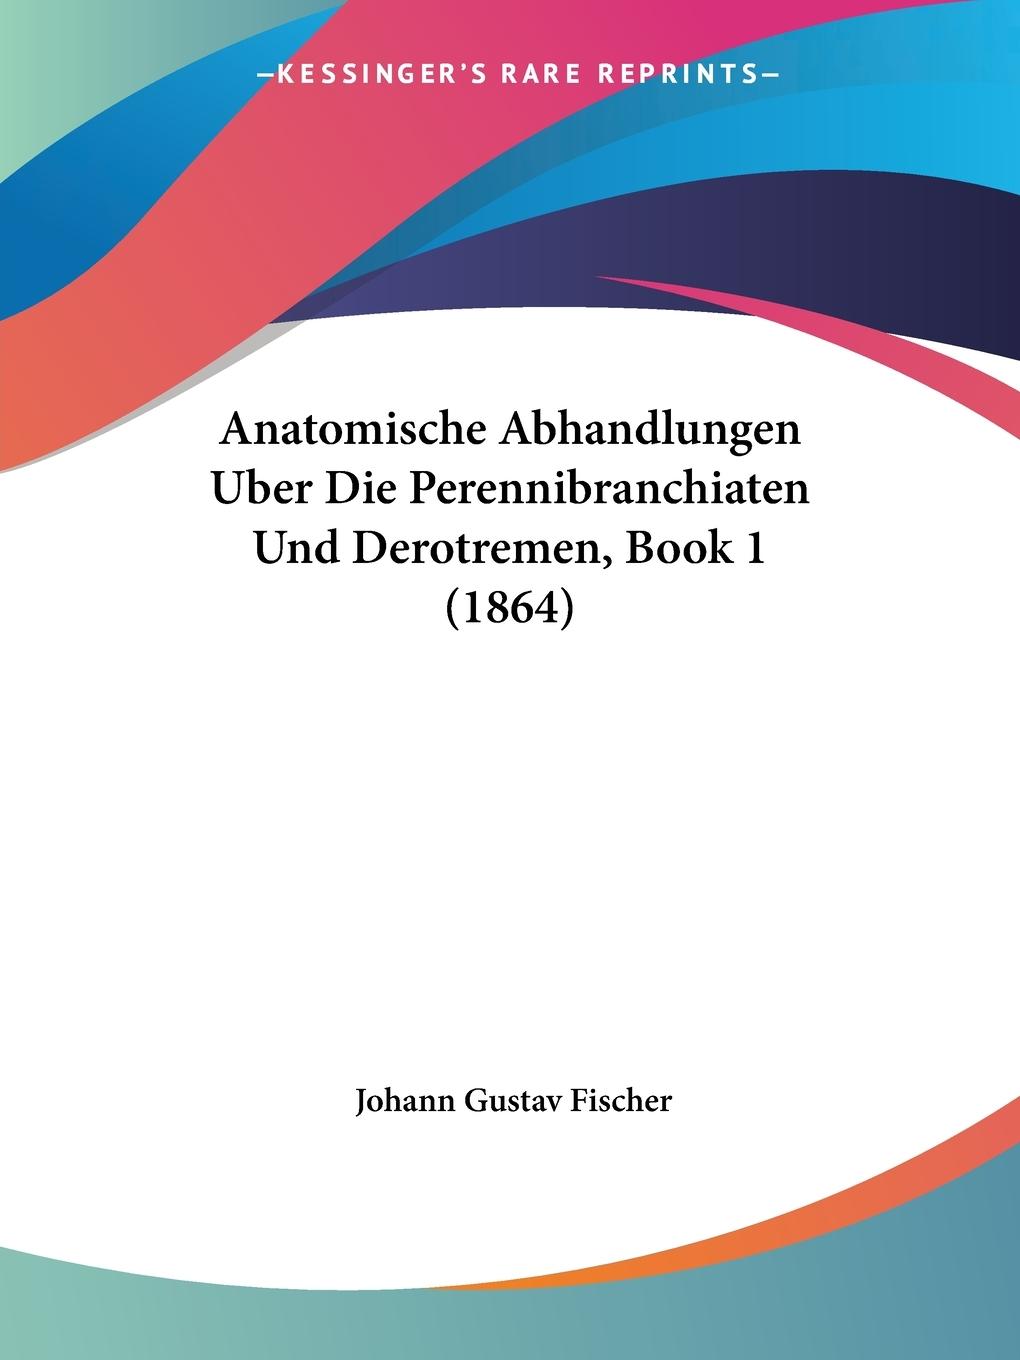 Anatomische Abhandlungen Uber Die Perennibranchiaten Und Derotremen, Book 1 (1864) - Fischer, Johann Gustav